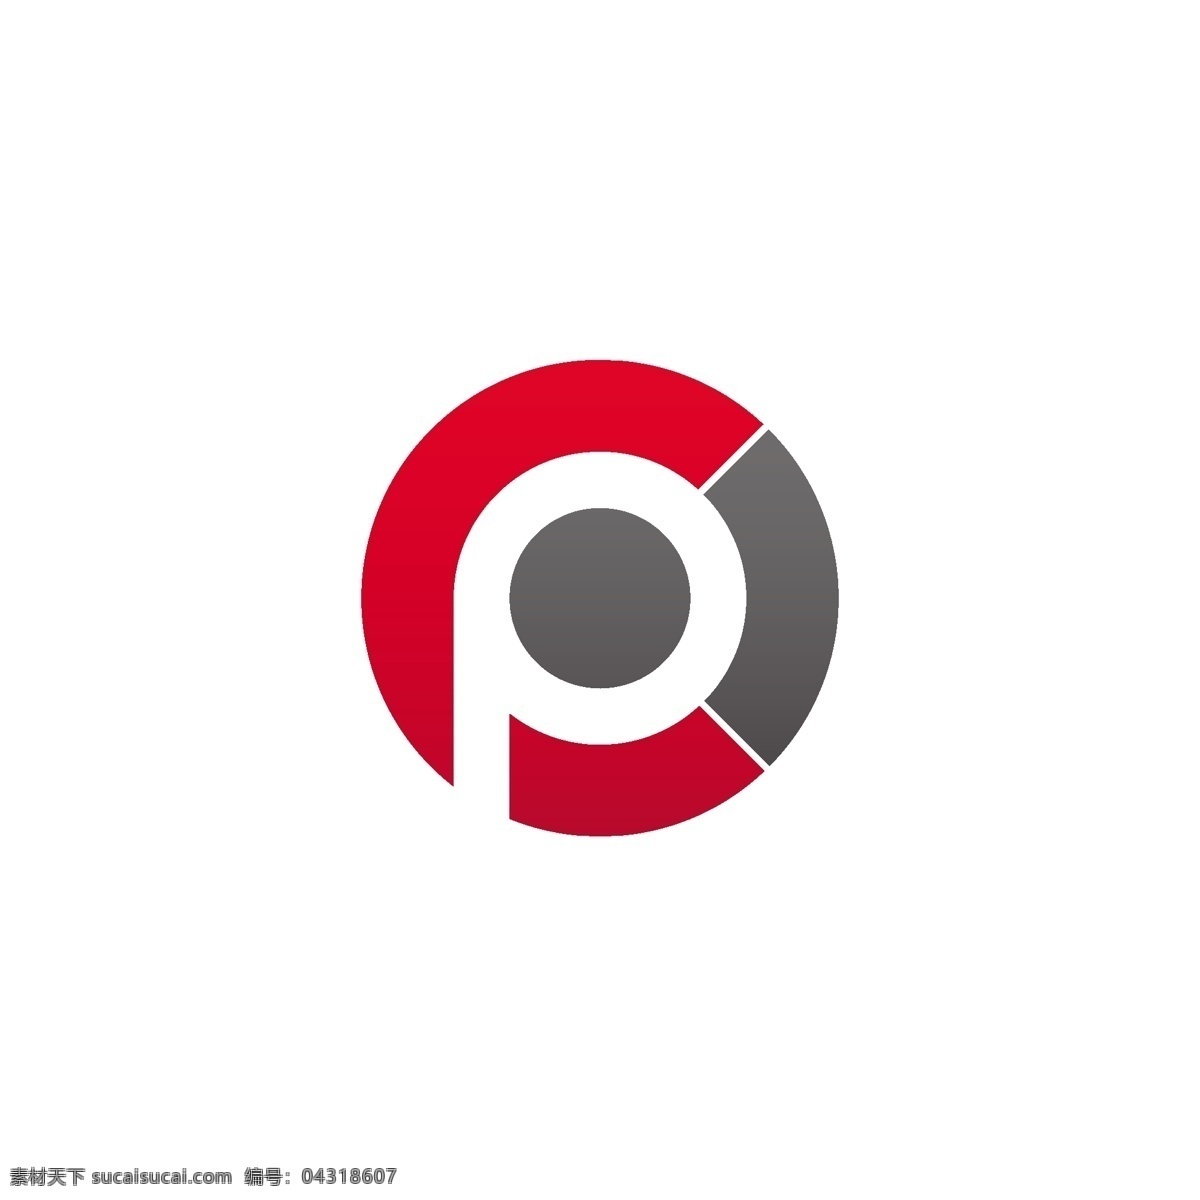 字母 造型 logo 标识 p 科技 标志 创意 广告 珠宝 互联网 科技logo 领域 多用途 公司 简约 企业标识 企业logo 能源